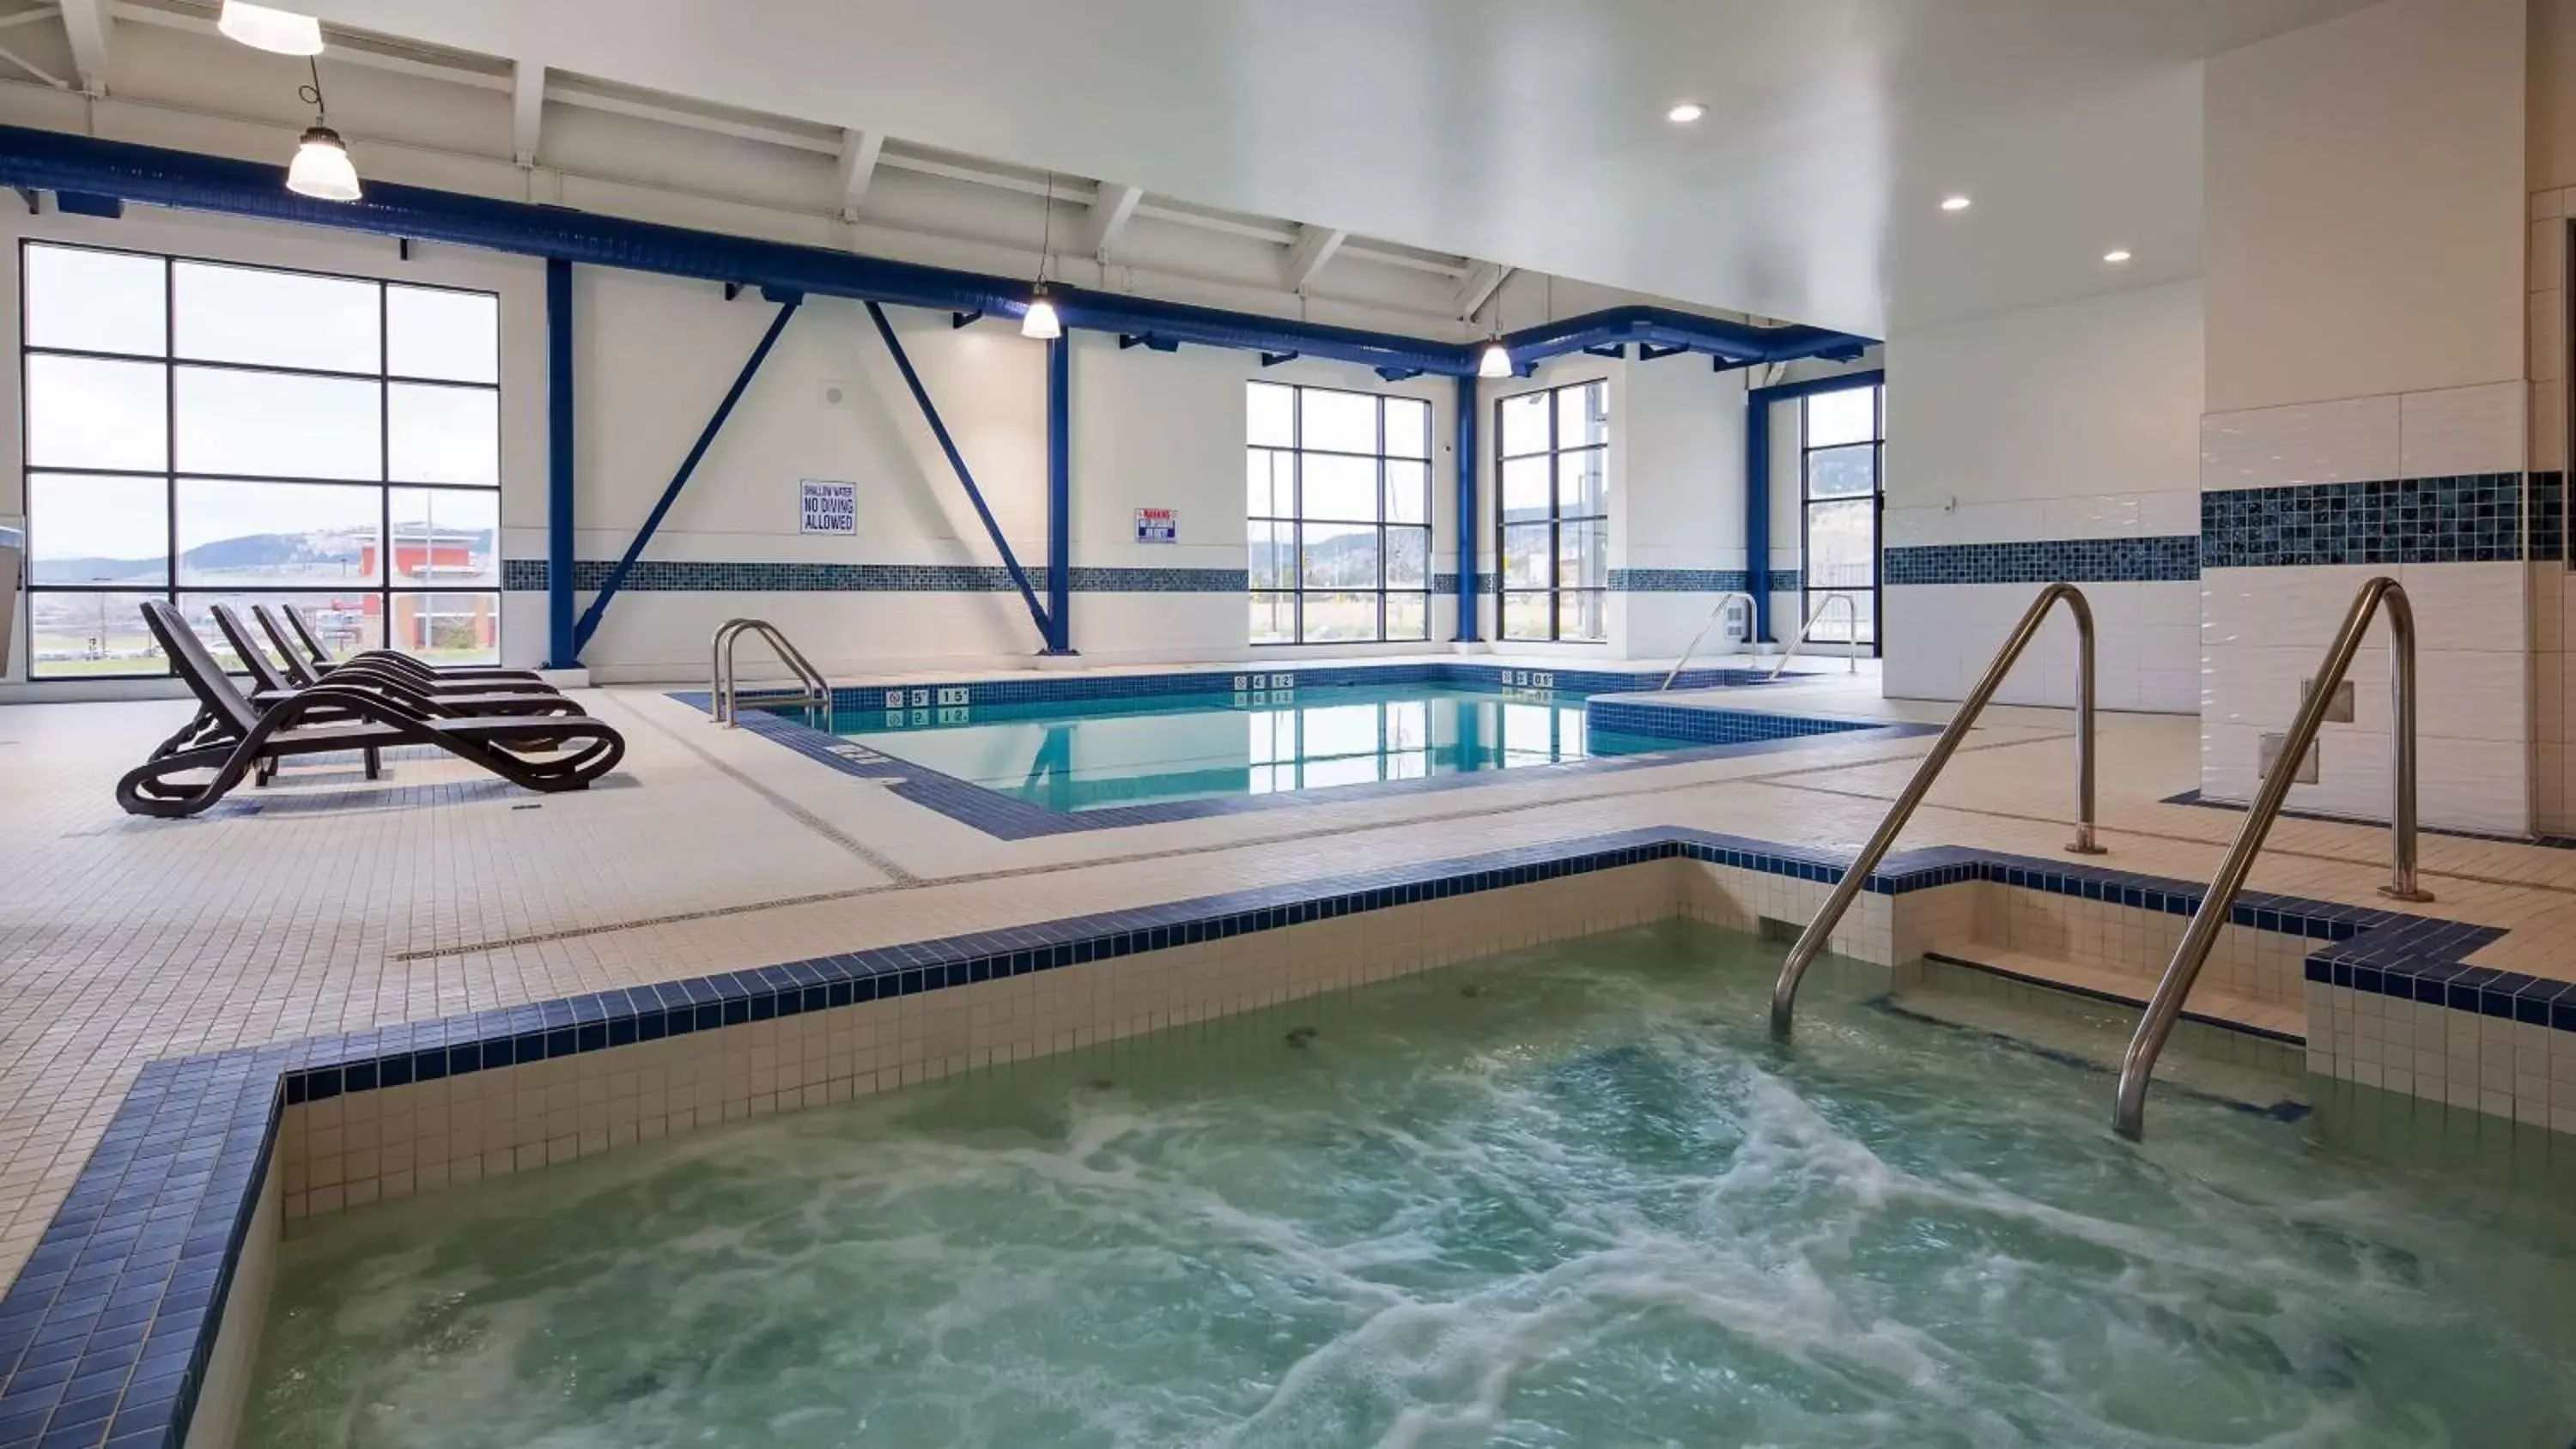 On site, Swimming Pool in Best Western Plus Merritt Hotel